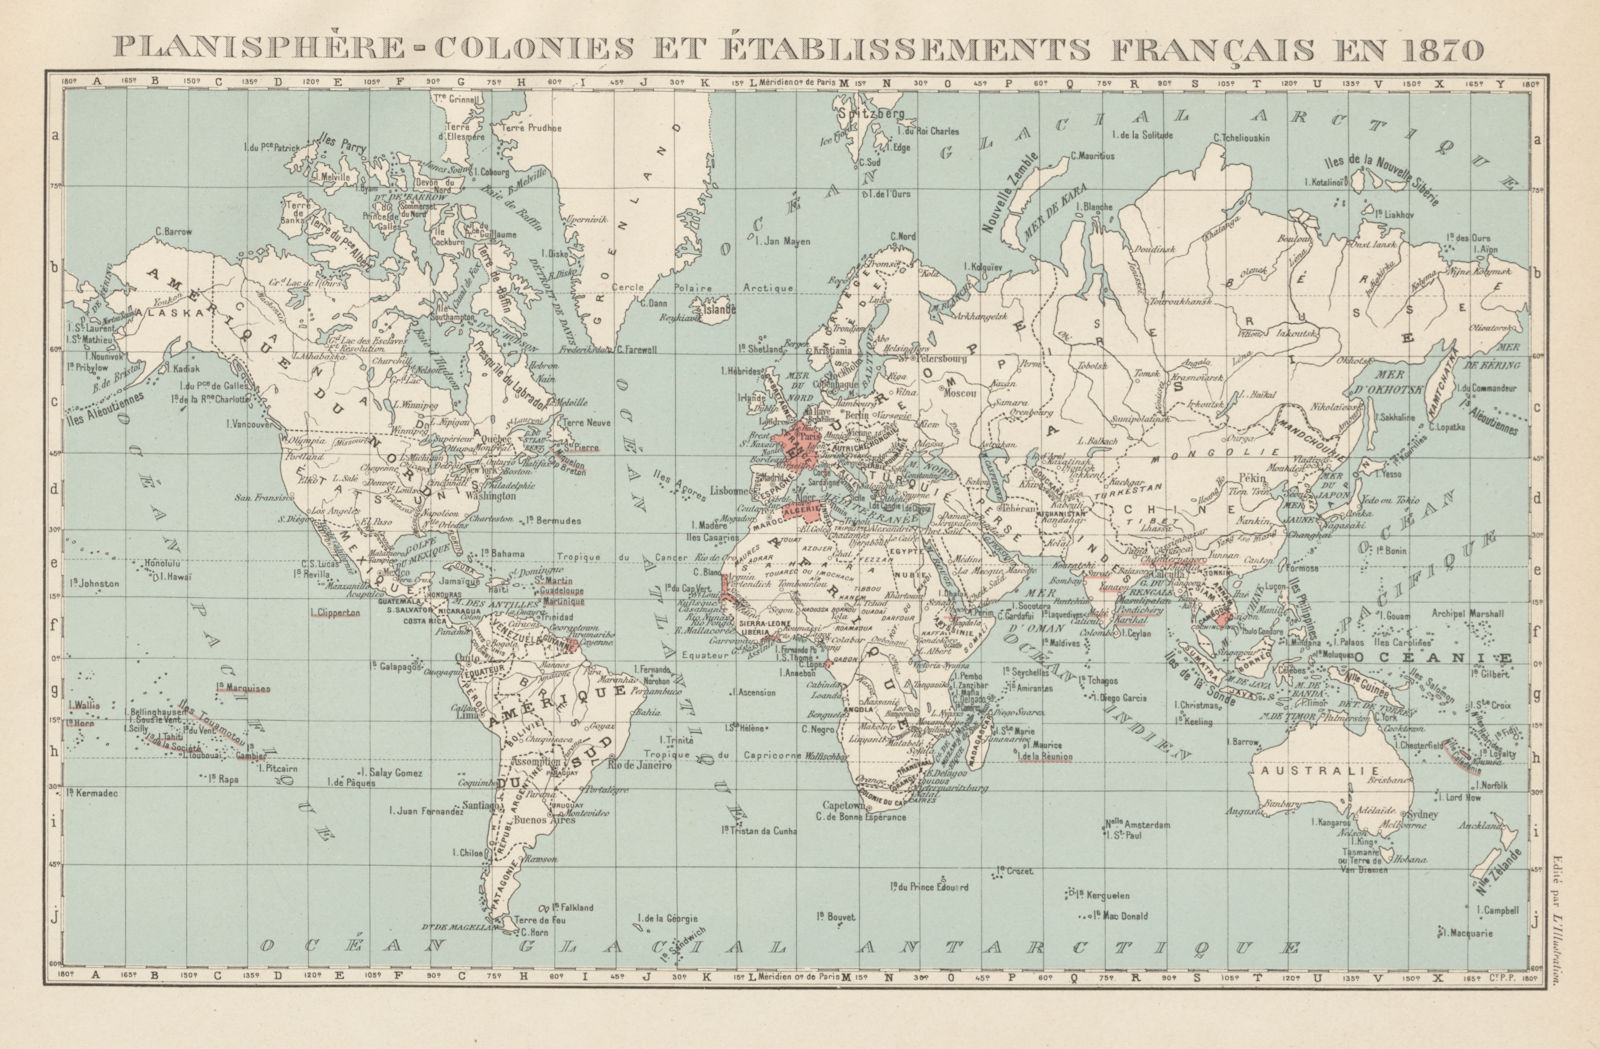 FRENCH COLONIES & établissements Français en 1870. Planisphere 1929 old map